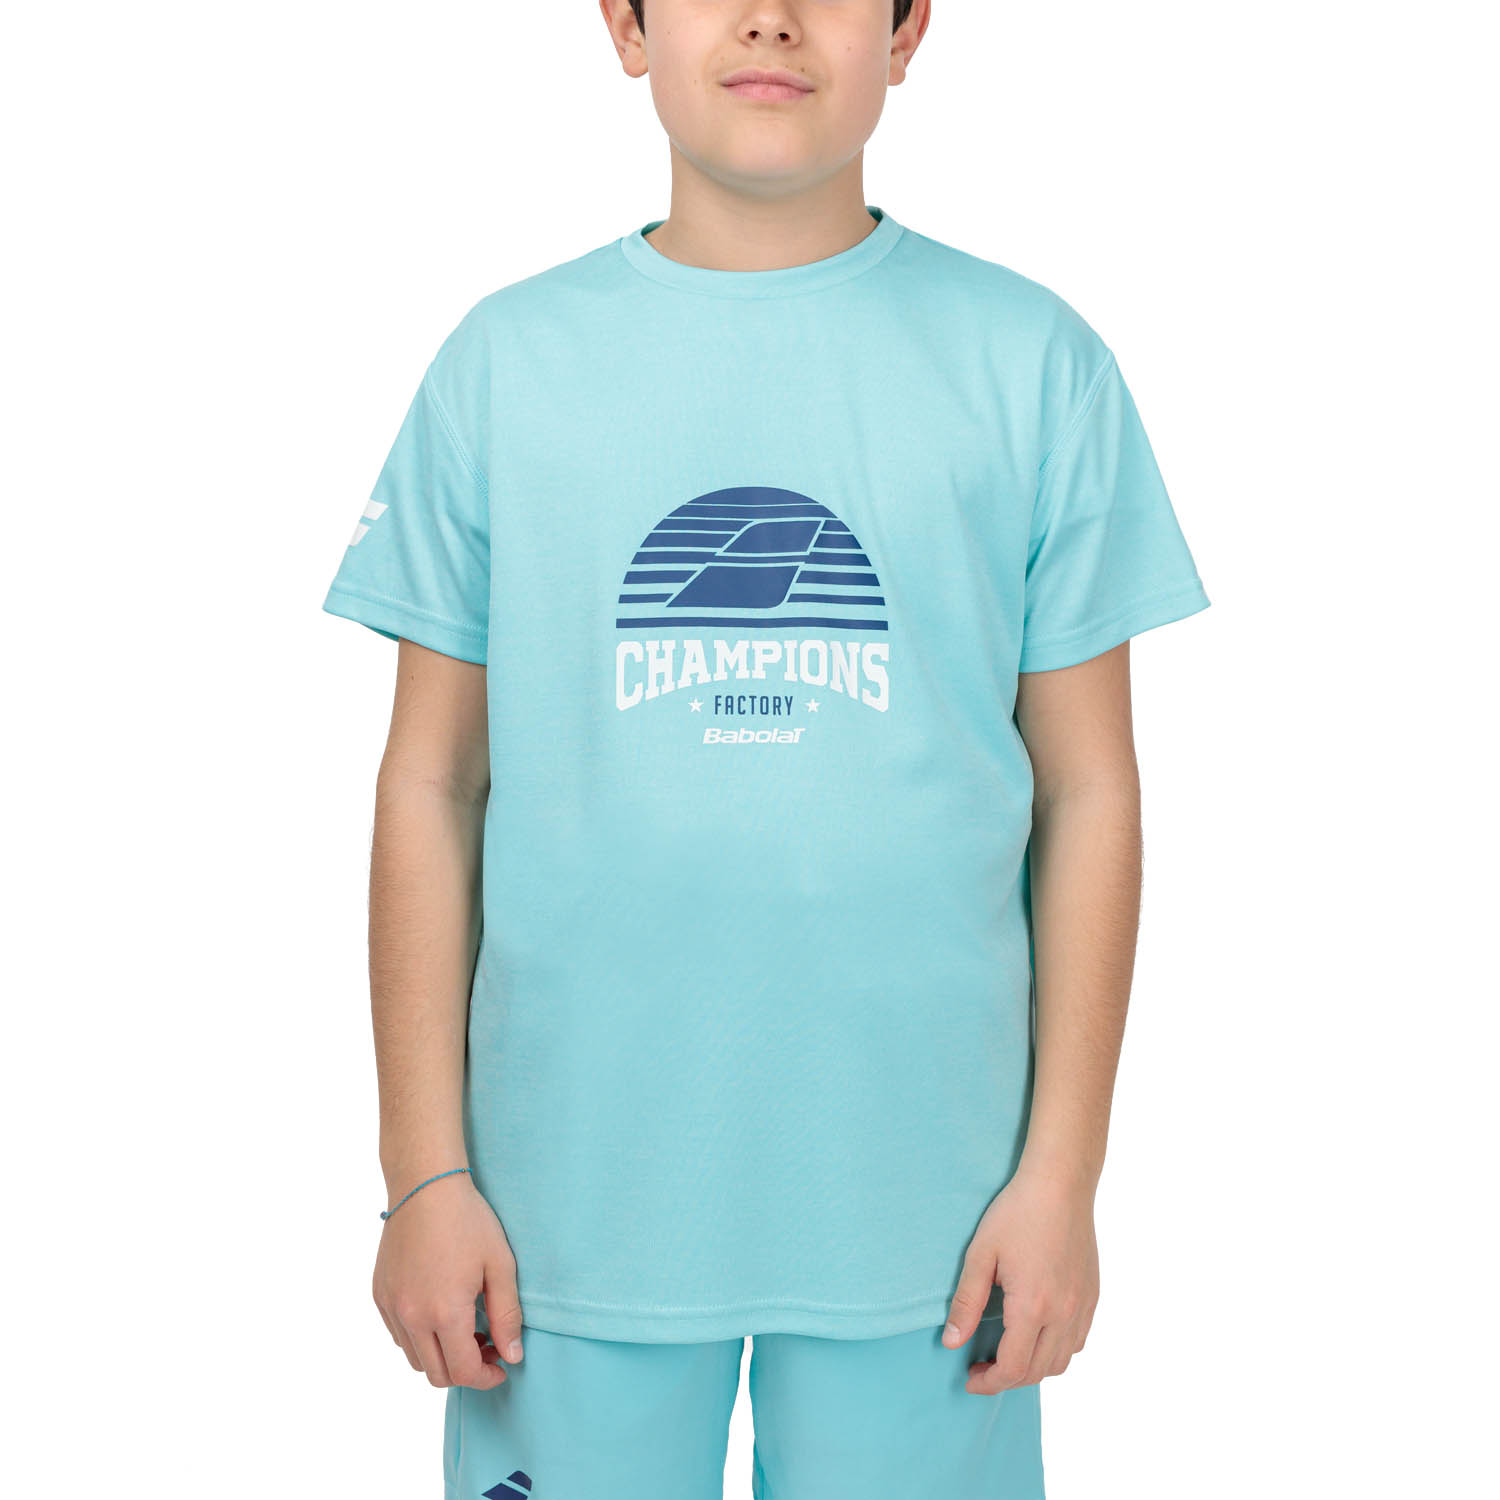 Babolat Exercise Graphic Camiseta Niño - Angel Blue Heather